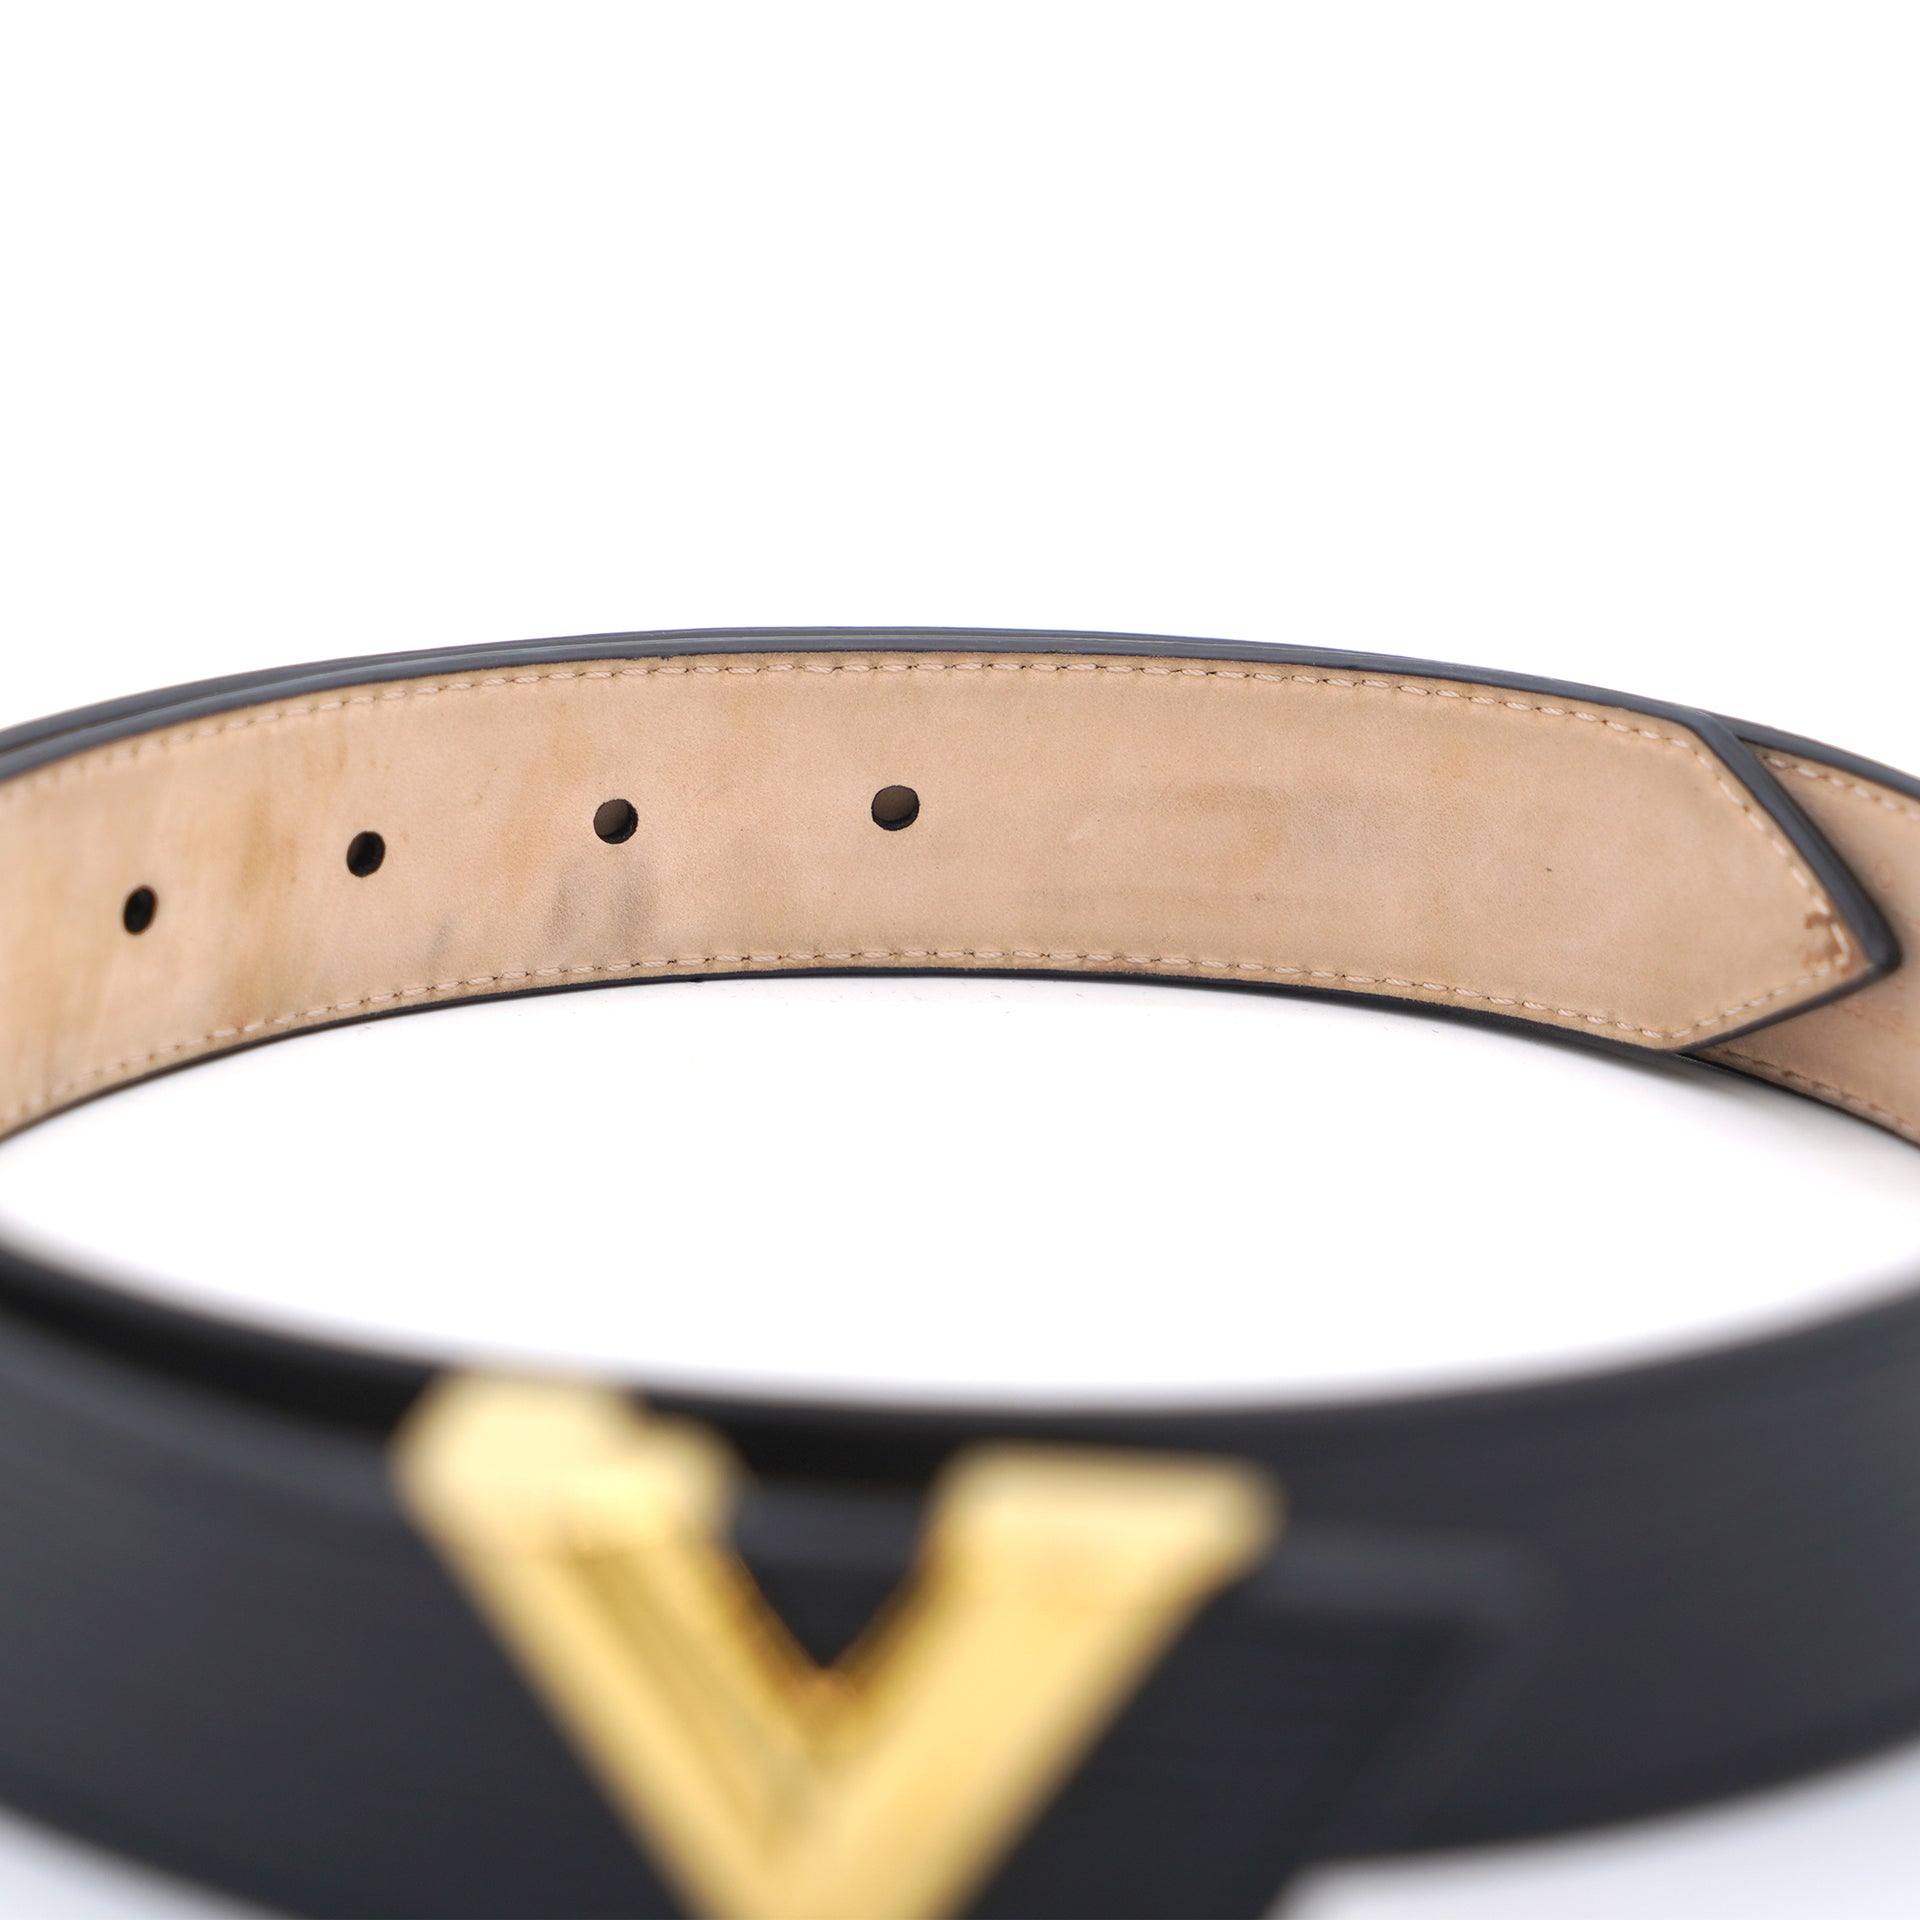 Louis Vuitton Damier Men's Leather Brown Belt Size 80